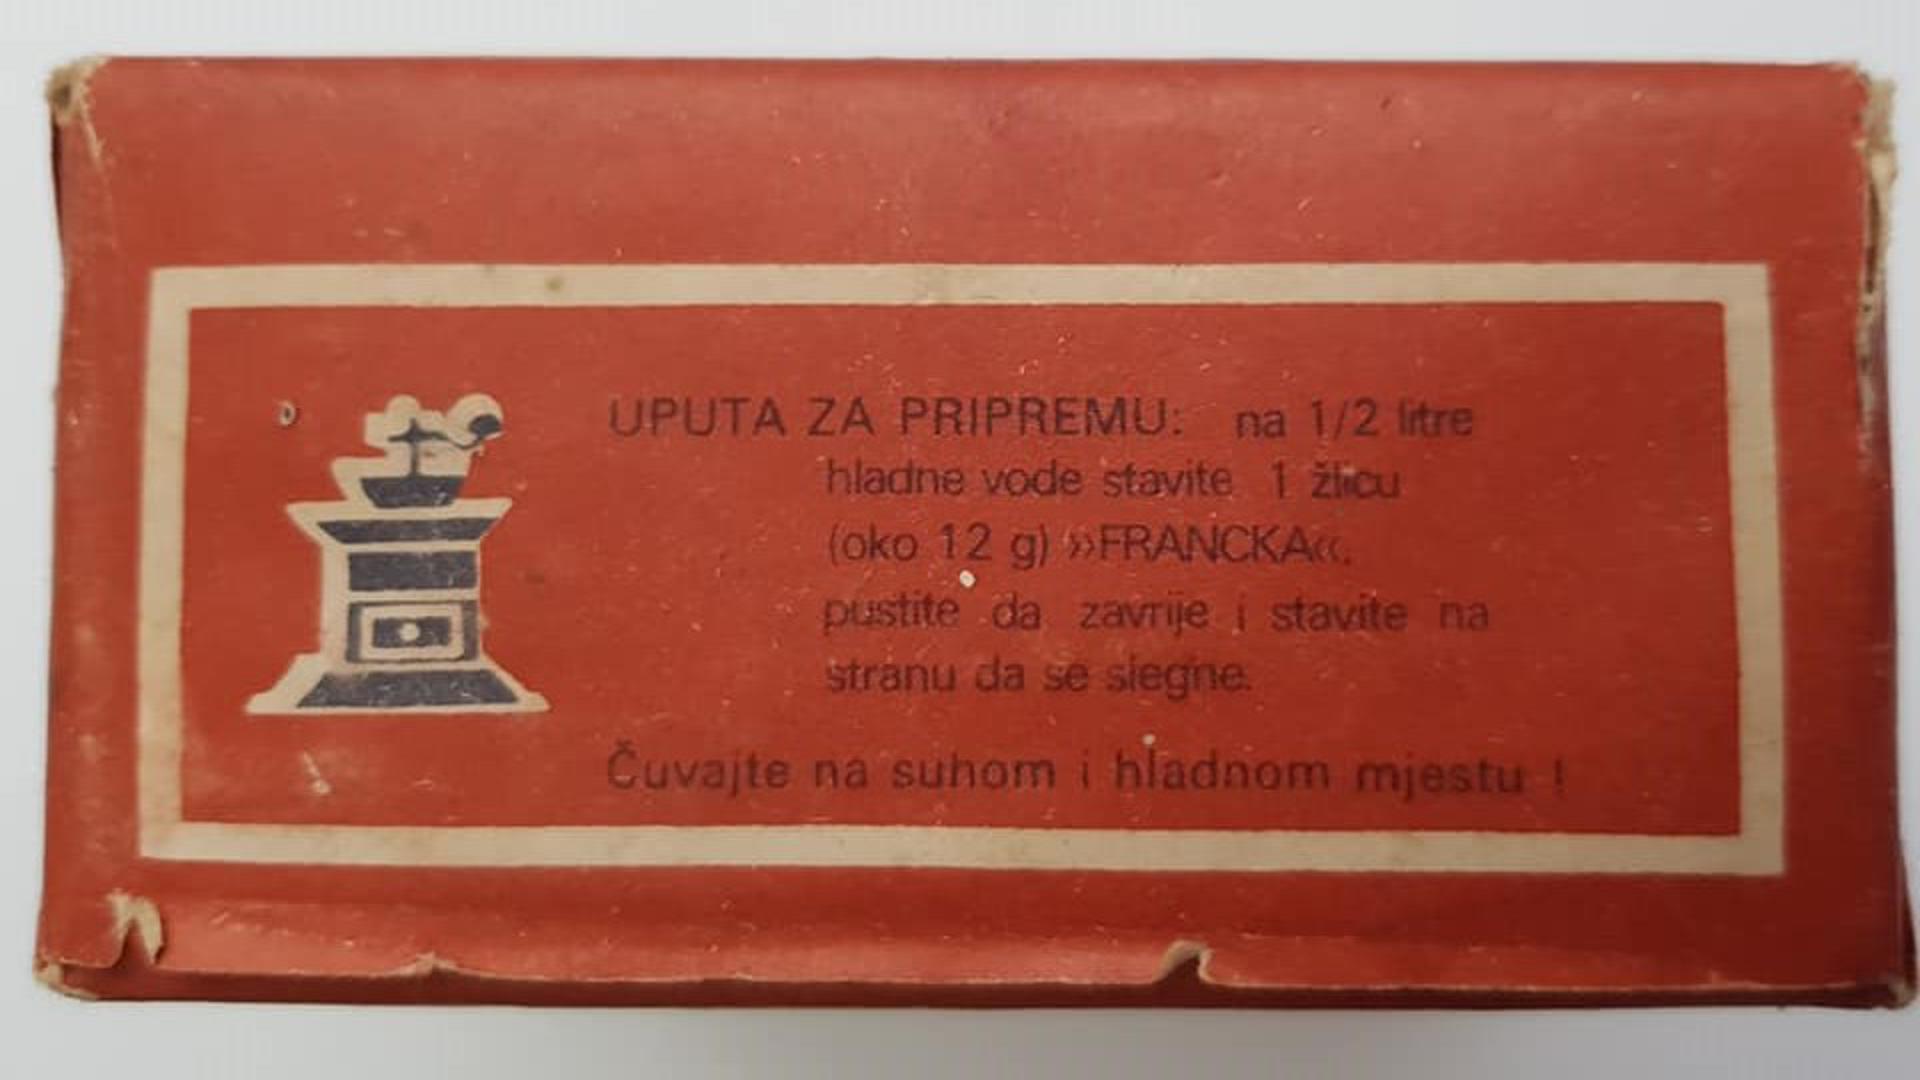 Ispijanje kave običaj je kojeg Hrvati shvaćaju itekako ozbiljno, no znate li kako je to nekada izgledalo? U Facebook grupi 'Retroteka' objavljen je niz fotografija koje prikazuju različita pakiranja kave iz 70ih i 80ih godina prošloga stoljeća, kao i posuđe koje je krasilo ovaj omiljeni hrvatski običaj.